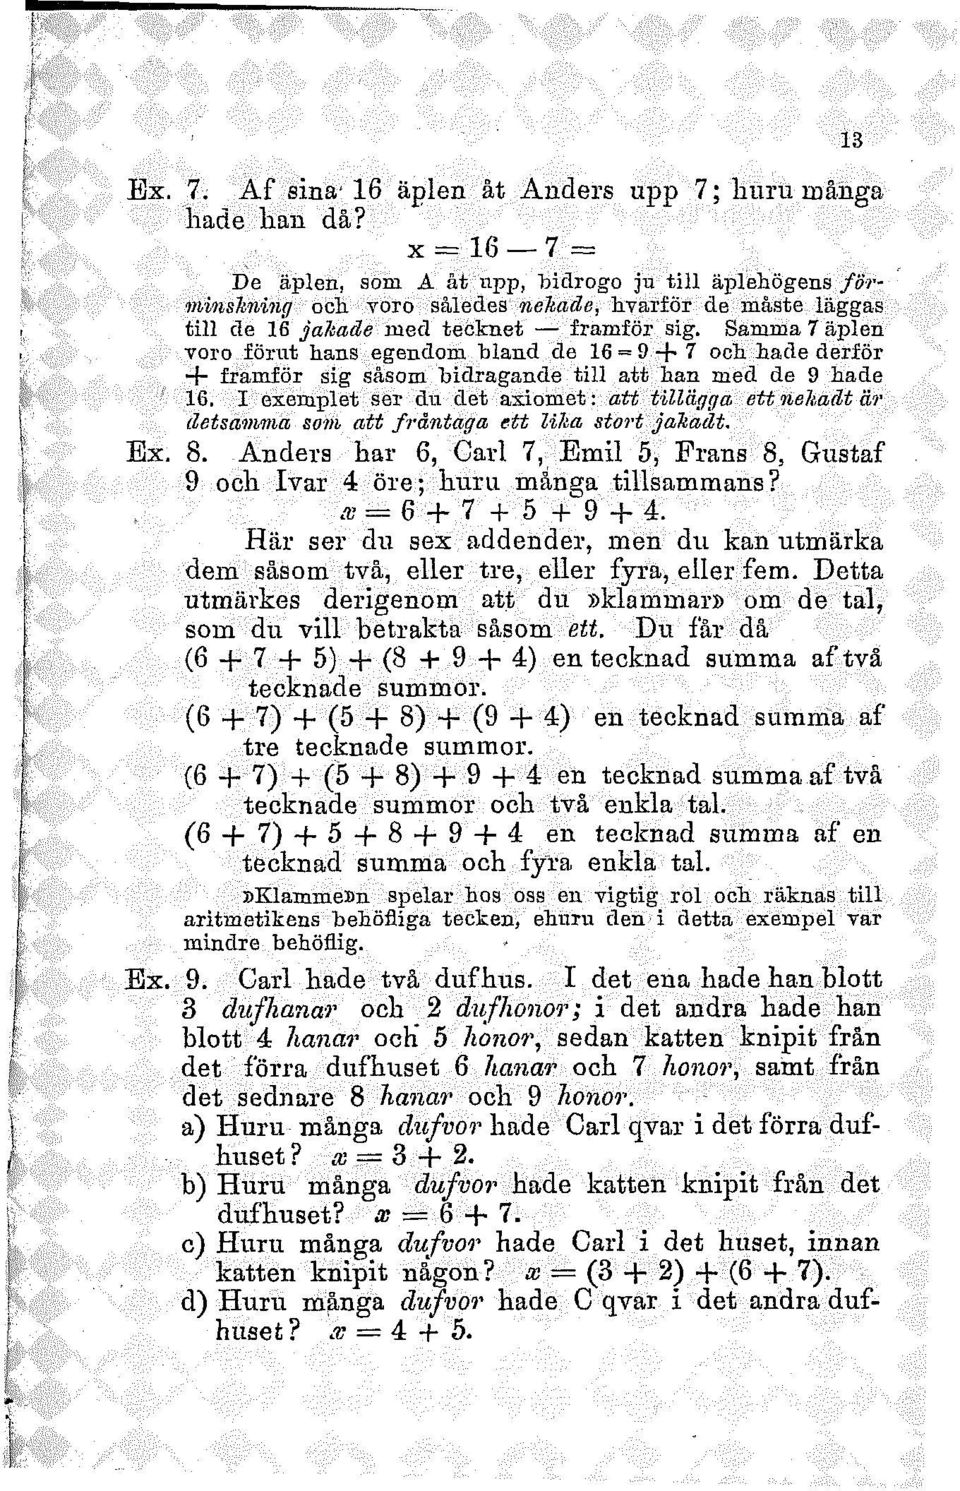 Samma 7 äplen voro förut hans egendom bland de 16 = 9 + 7 och hade derför + framför sig såsom bidragande till att han med de 9 hade 16.